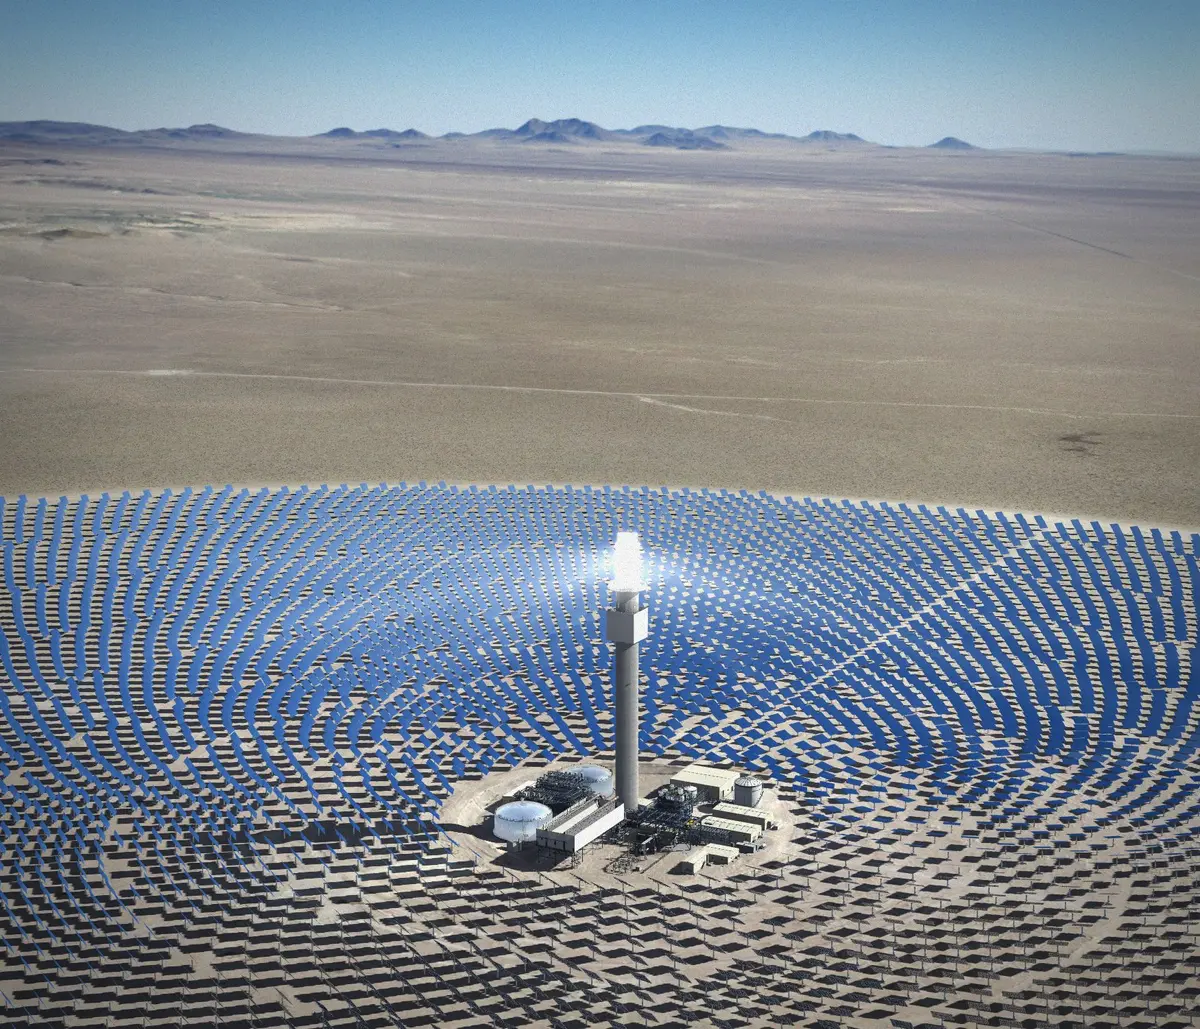 2016 grant recipient John Gerrard’s Solar Reserve.  John Gerrard, Solar Reserve (Tonopah, Nevada), 2014, Simulation